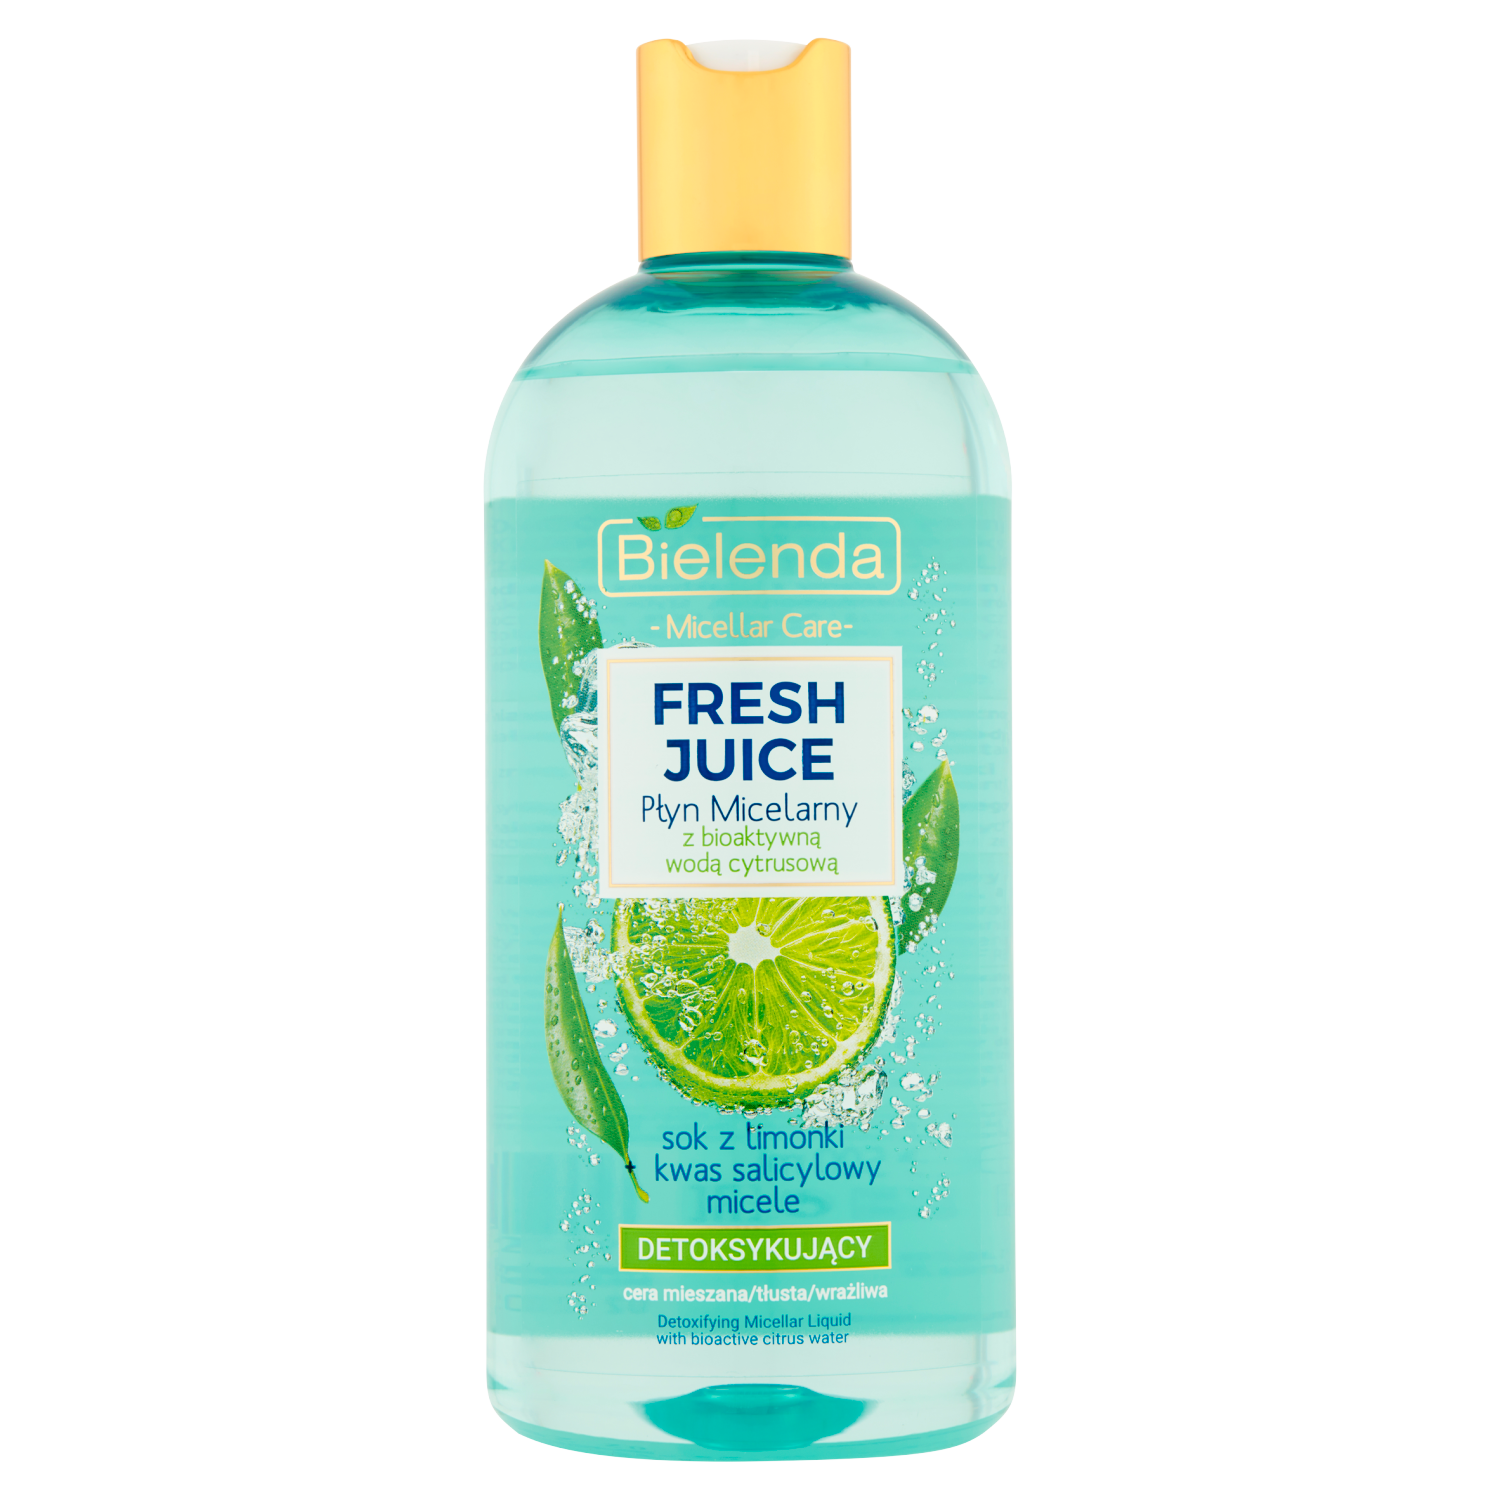 Bielenda Fresh Juice детоксифицирующая мицеллярная вода с биоактивной цитрусовой водой, 500 мл bielenda fresh juice